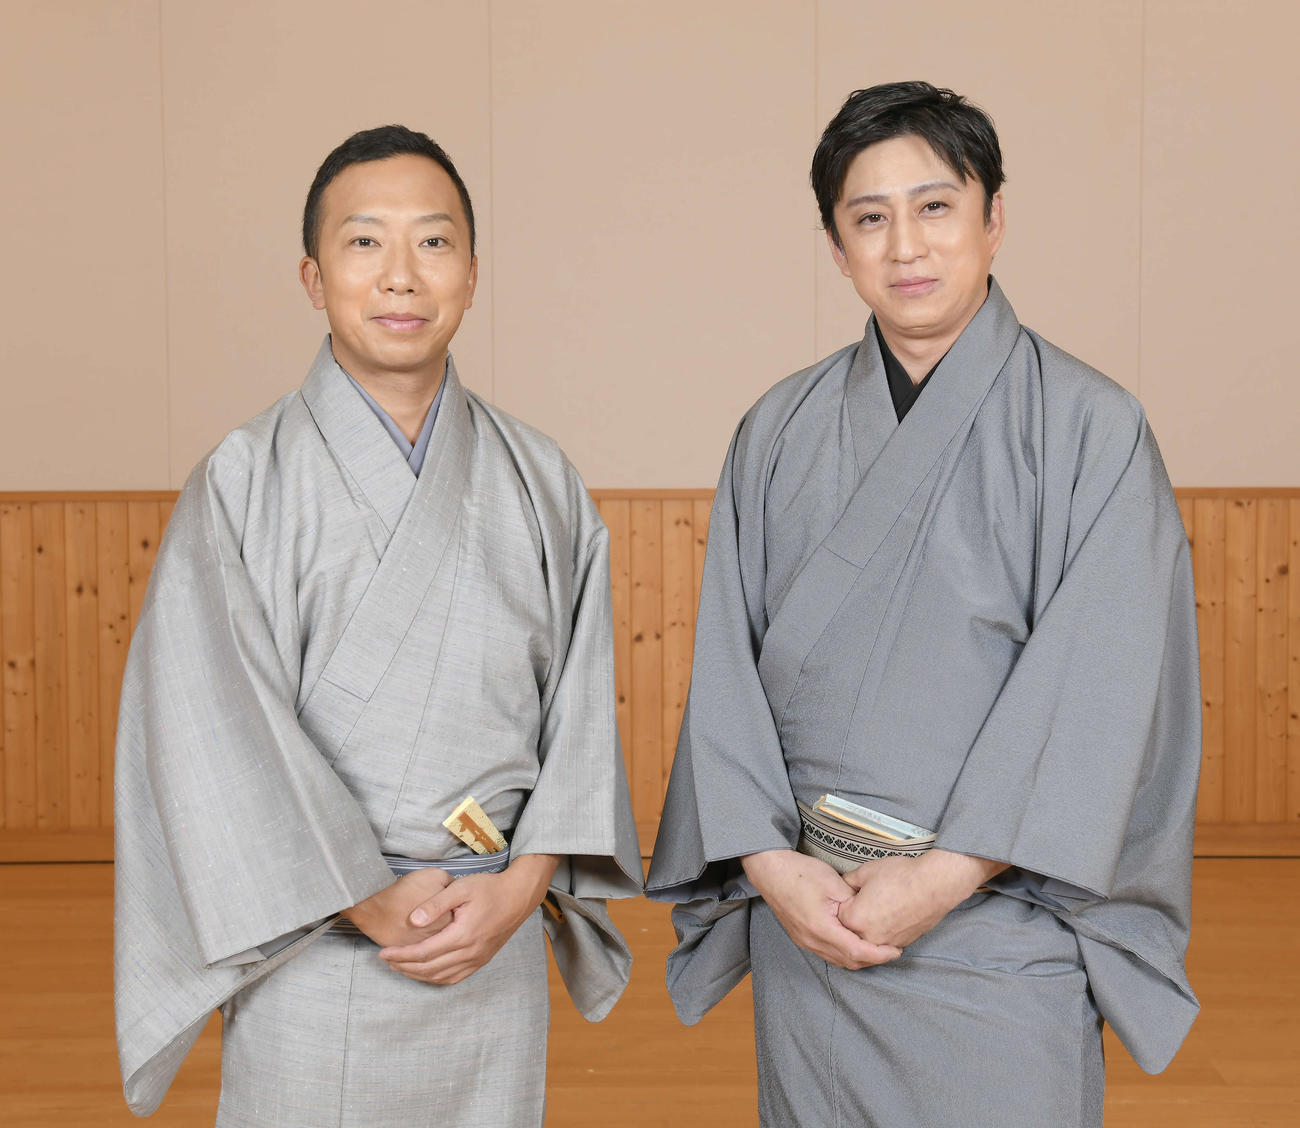 歌舞伎座で上演する「花競忠臣顔見勢(はなくらべぎしのかおみせ）」について語った市川猿之助（左）、松本幸四郎